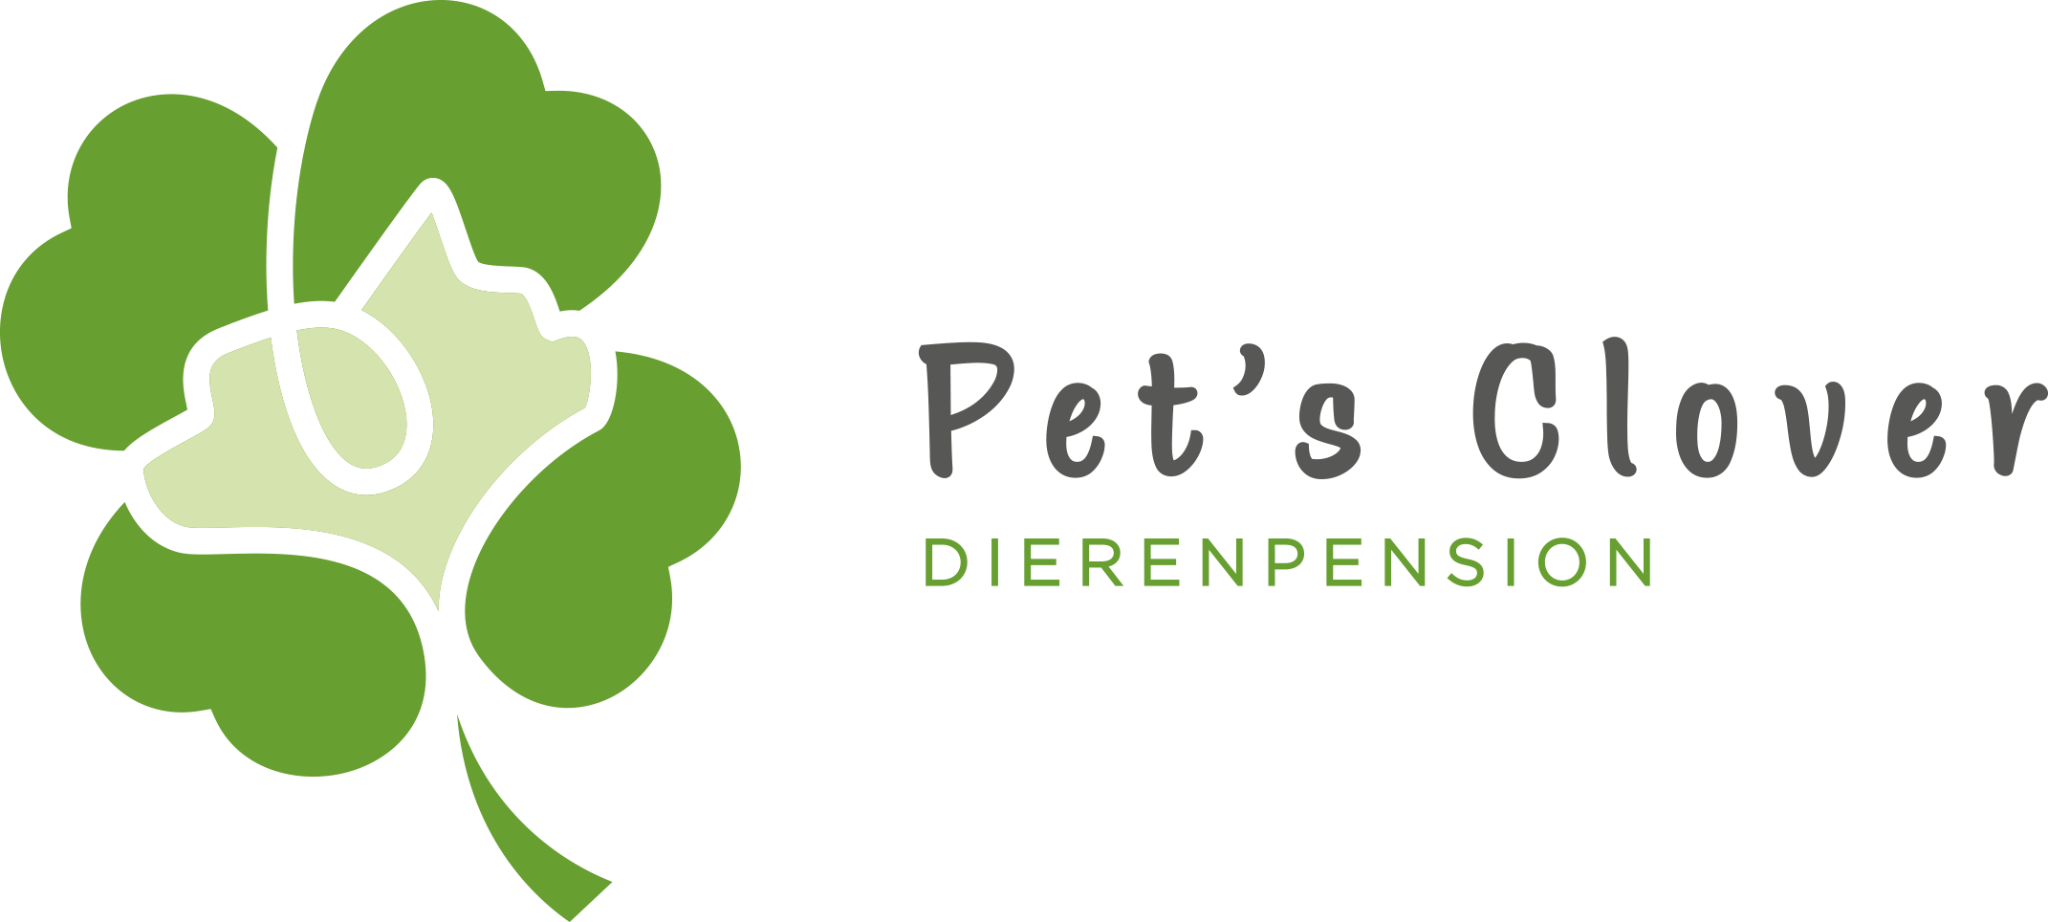 Dierenpension Pet's Clover